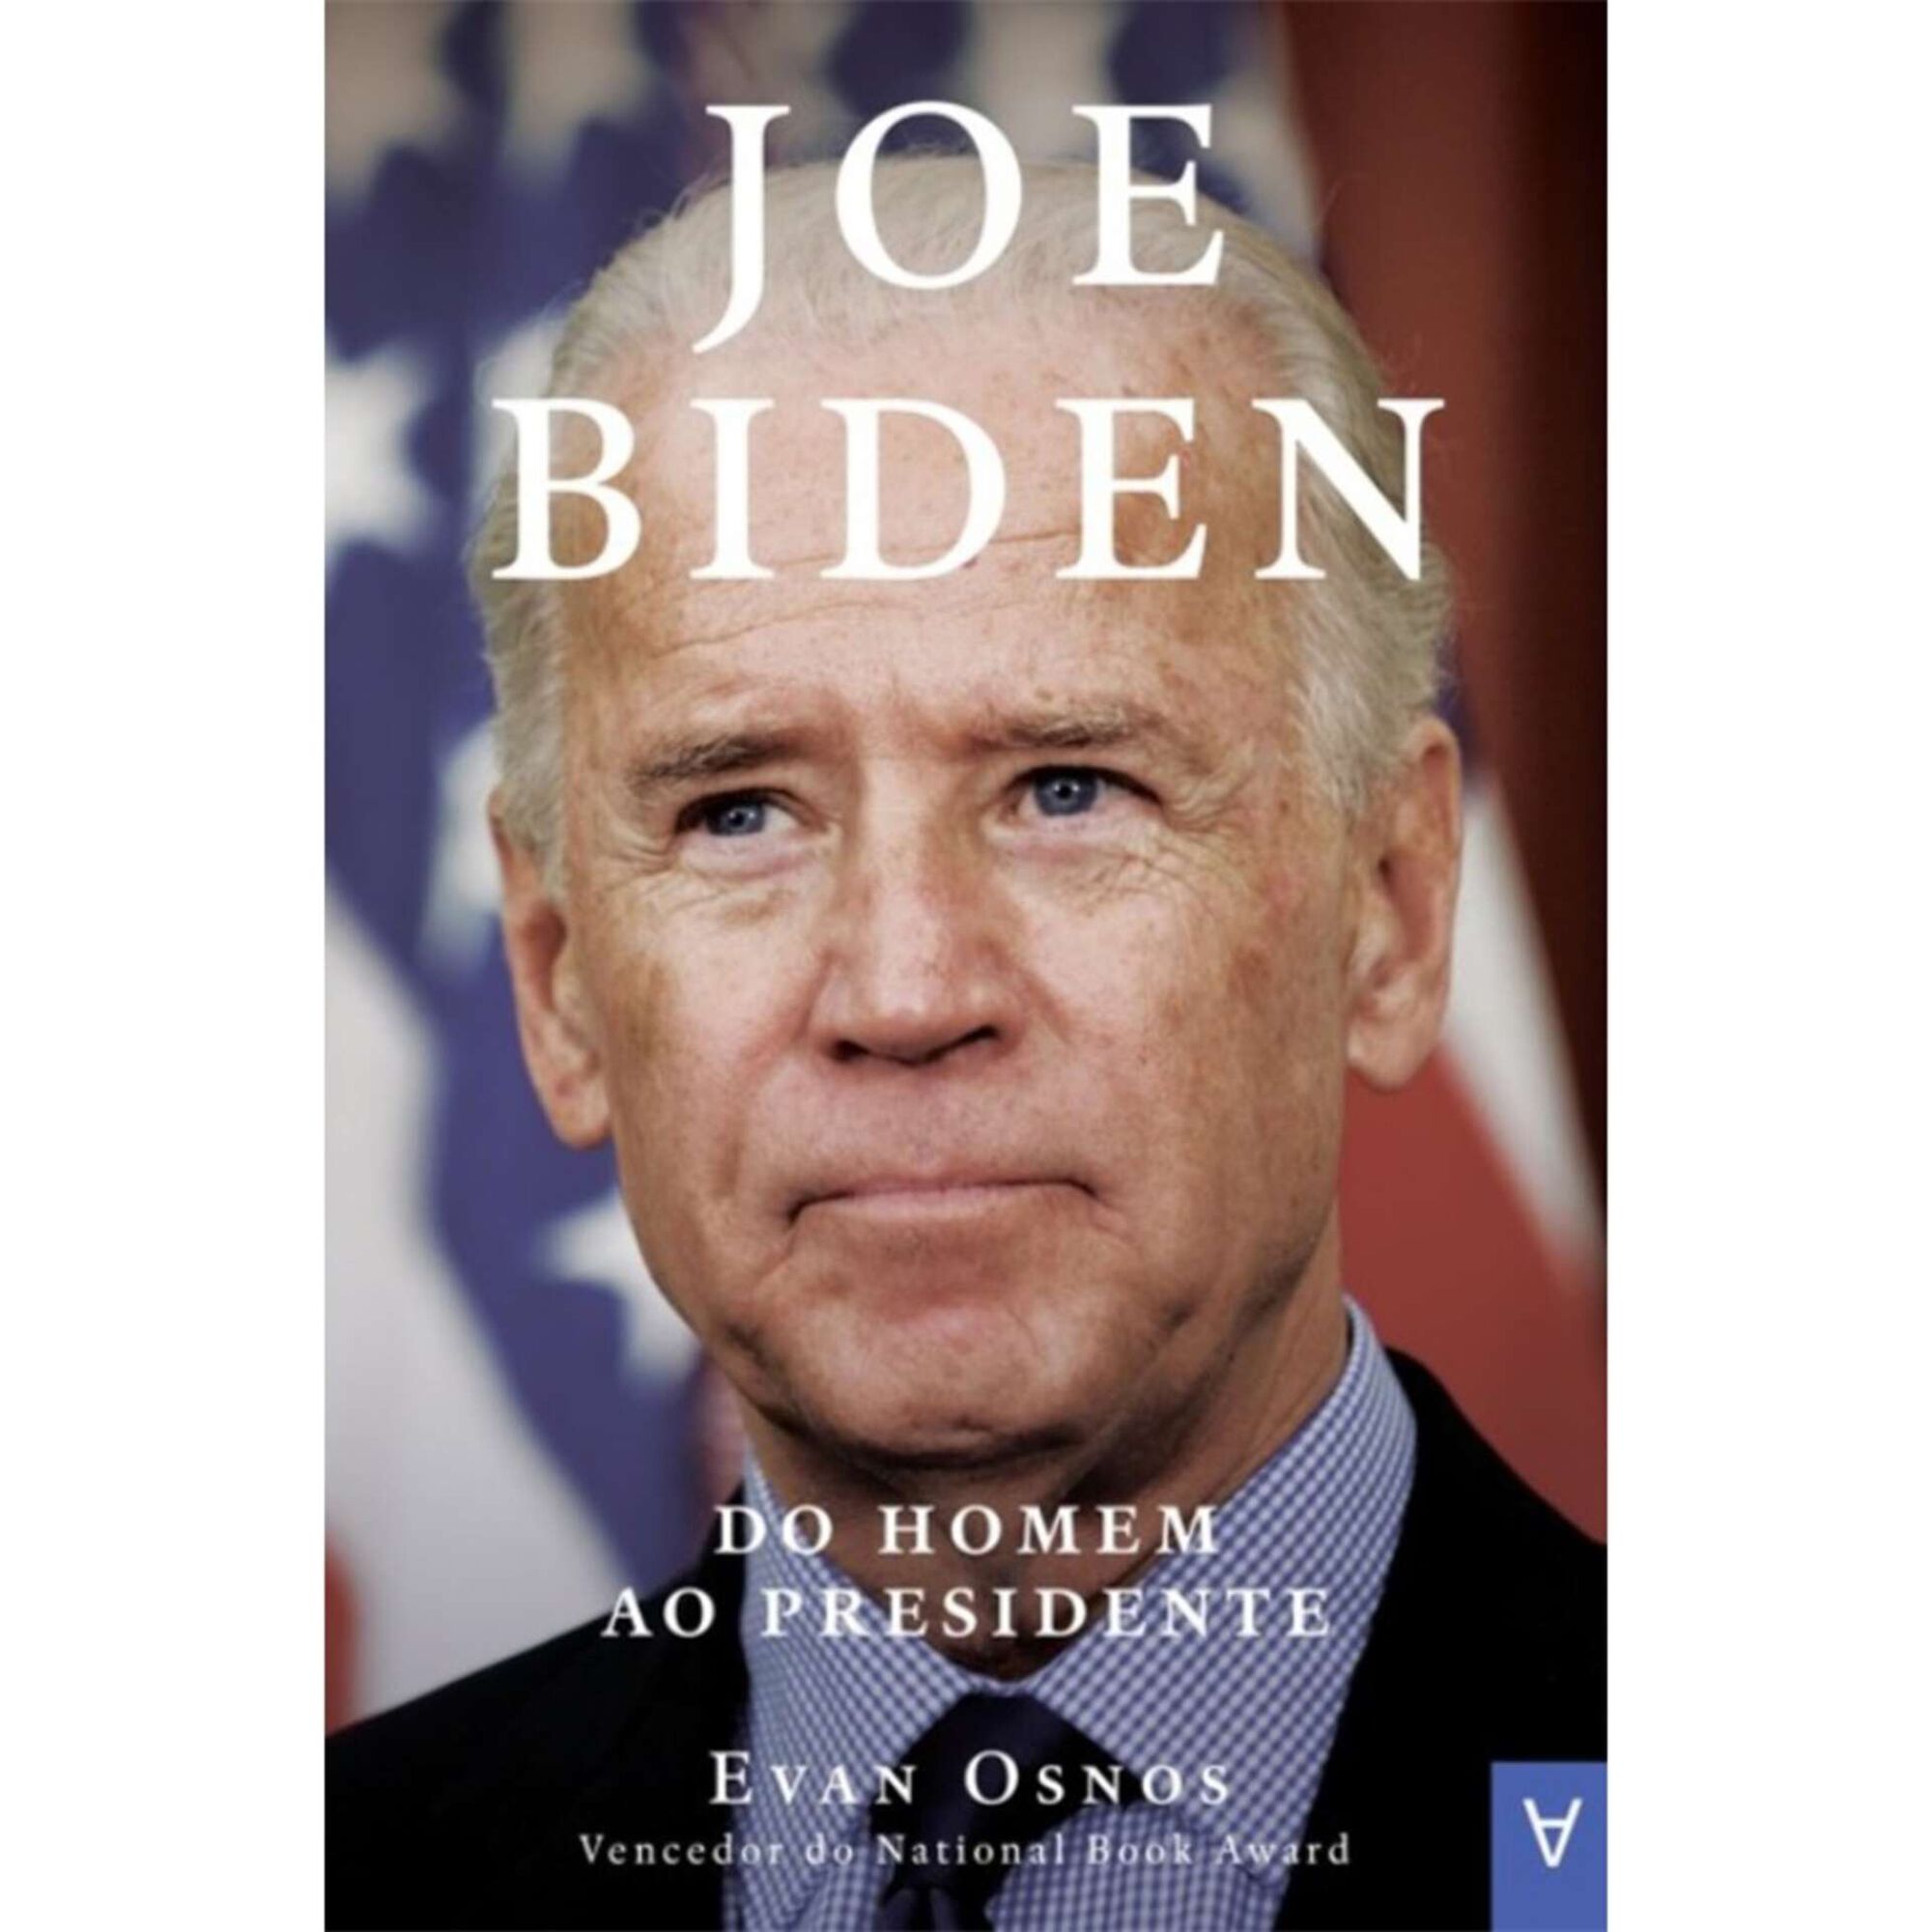 Joe Biden - Do Homem ao Presidente